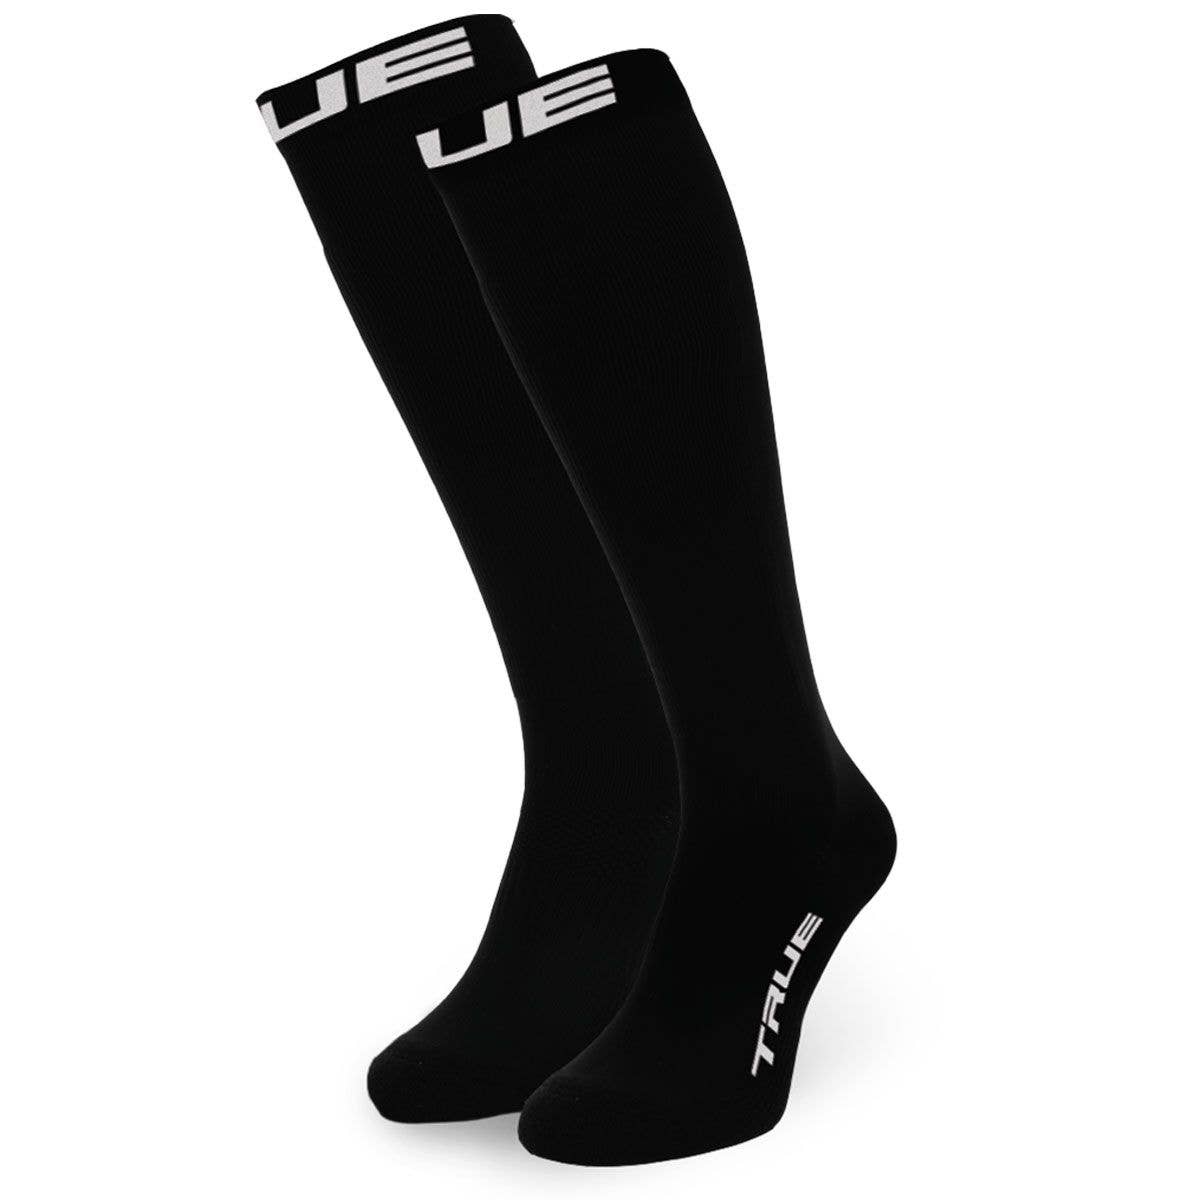 https://www.hockeymonkey.ca/media/catalog/product/cache/a848536da192a0c5bb969d0898e6ec13/t/r/true-socks-cut-resistant.jpg